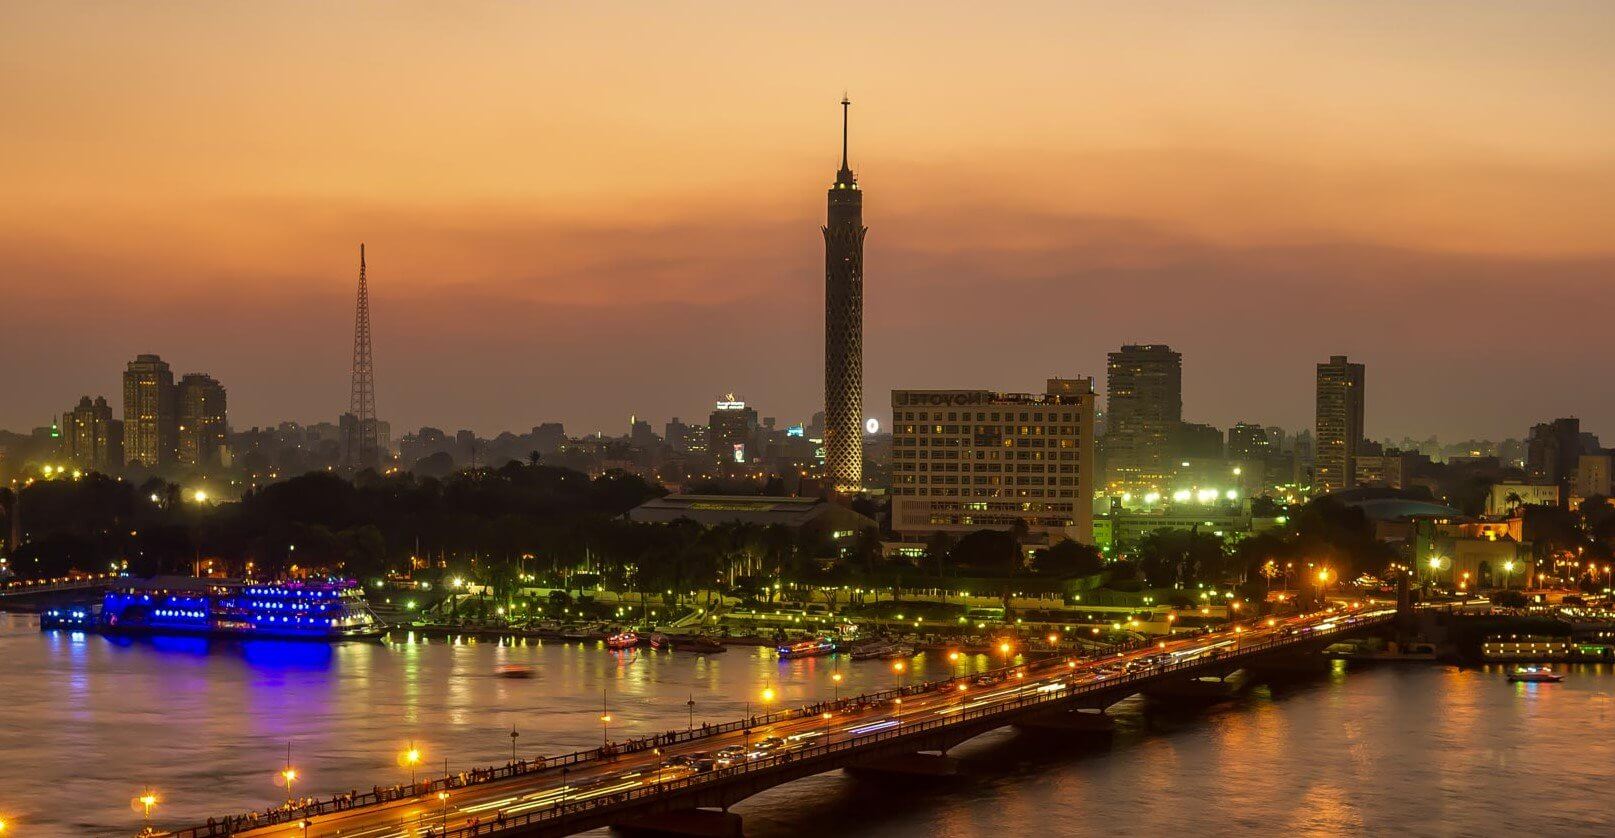 السياحة فى مصر وافضل 3 مدن سياحية